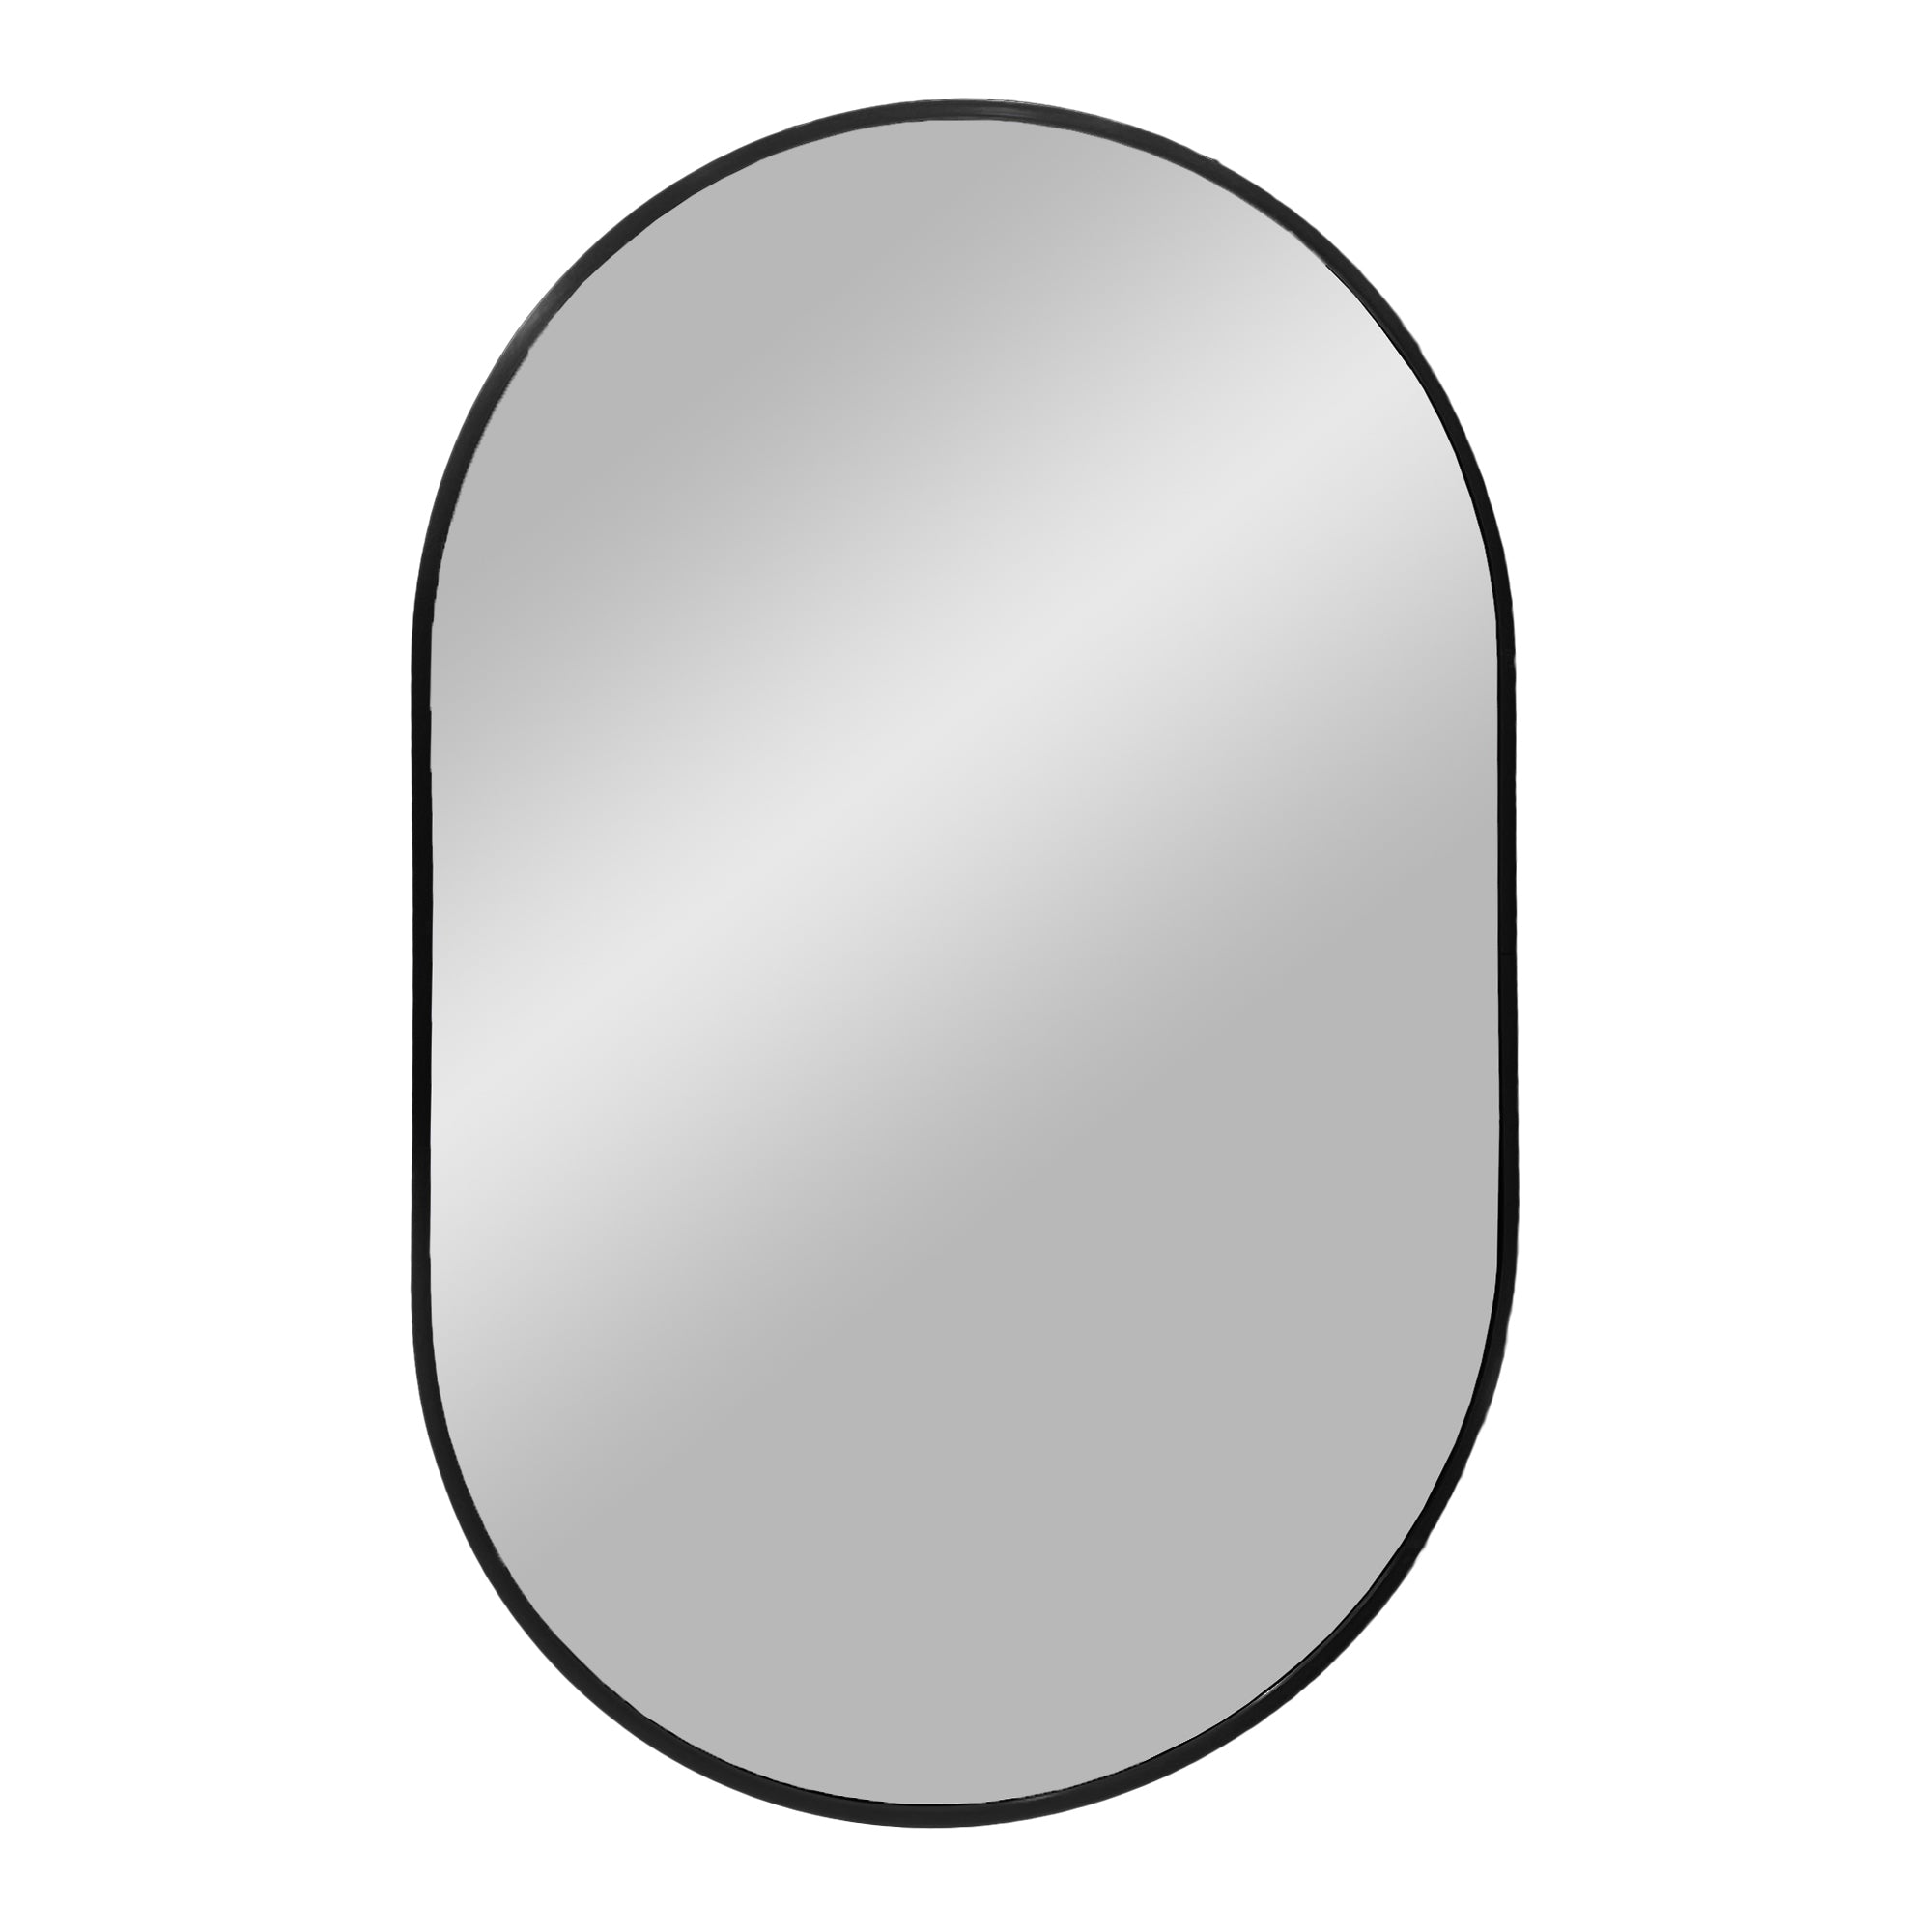 6: Madrid Spejl - Spejl i aluminium, sort, 50x80 cm